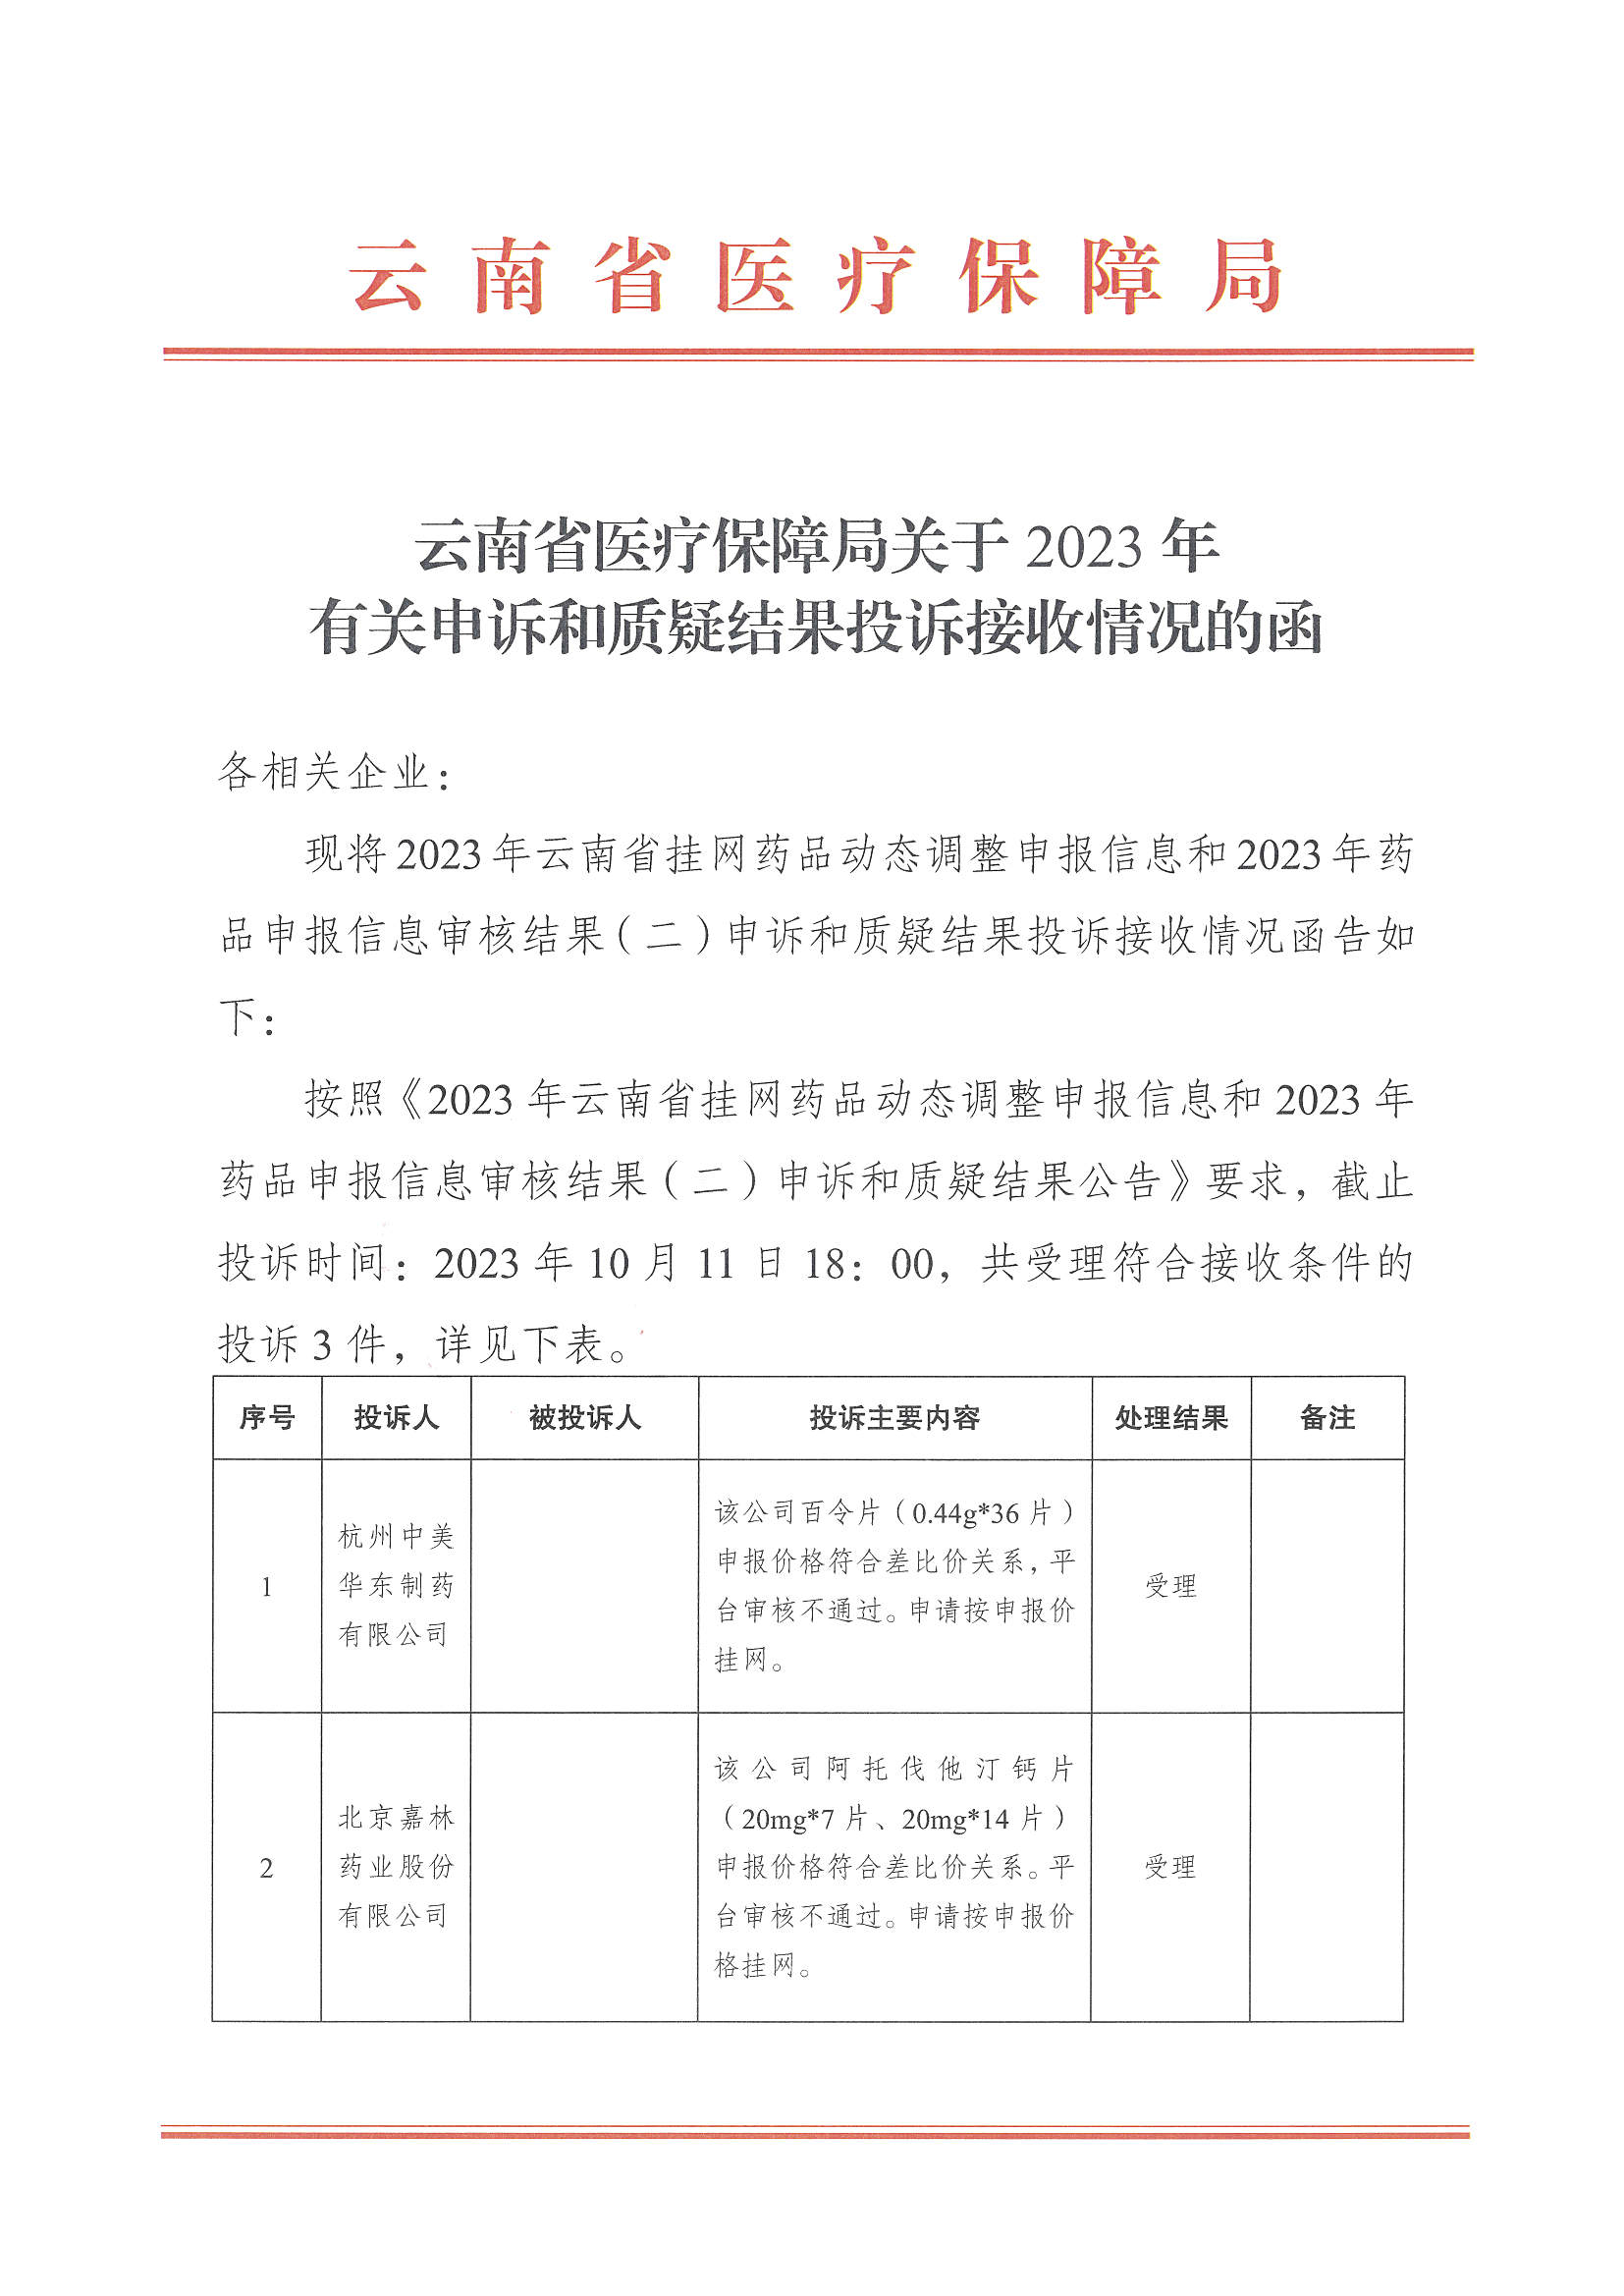 云南省医疗保障局关于2023年有关申诉和质疑结果投诉接收情况的函